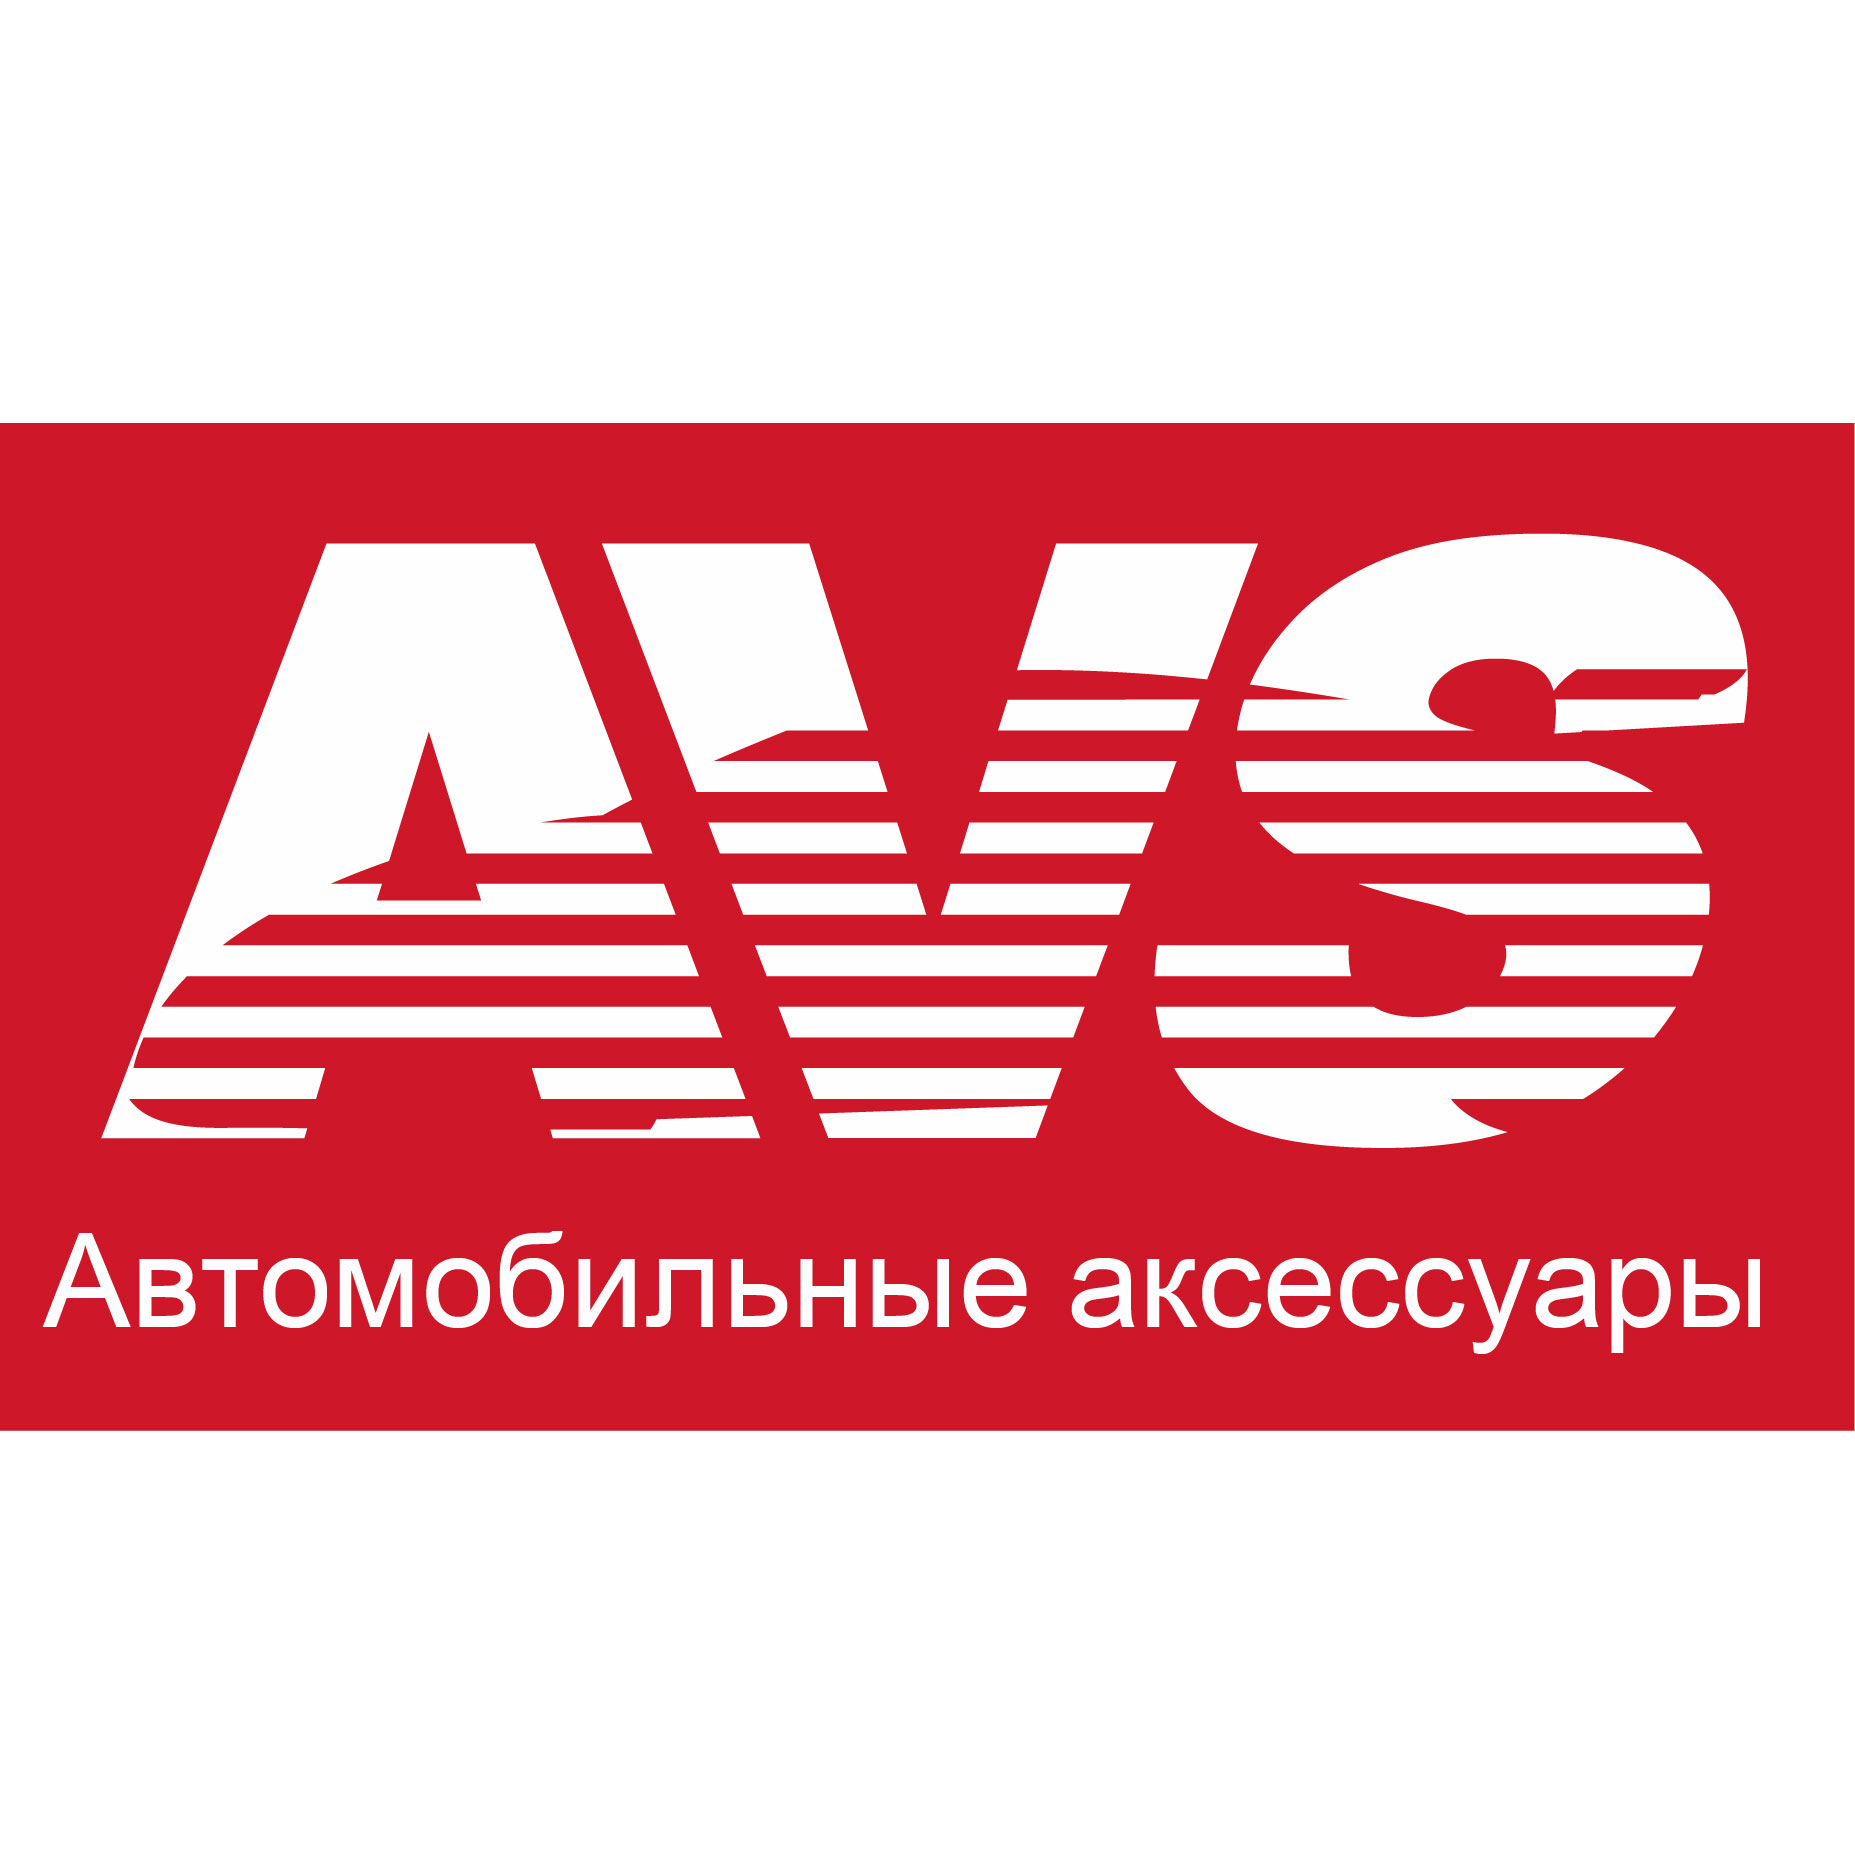 Щетка стеклоочистителя бескаркасная (330 мм) "avs" optimal line AVS A07197S